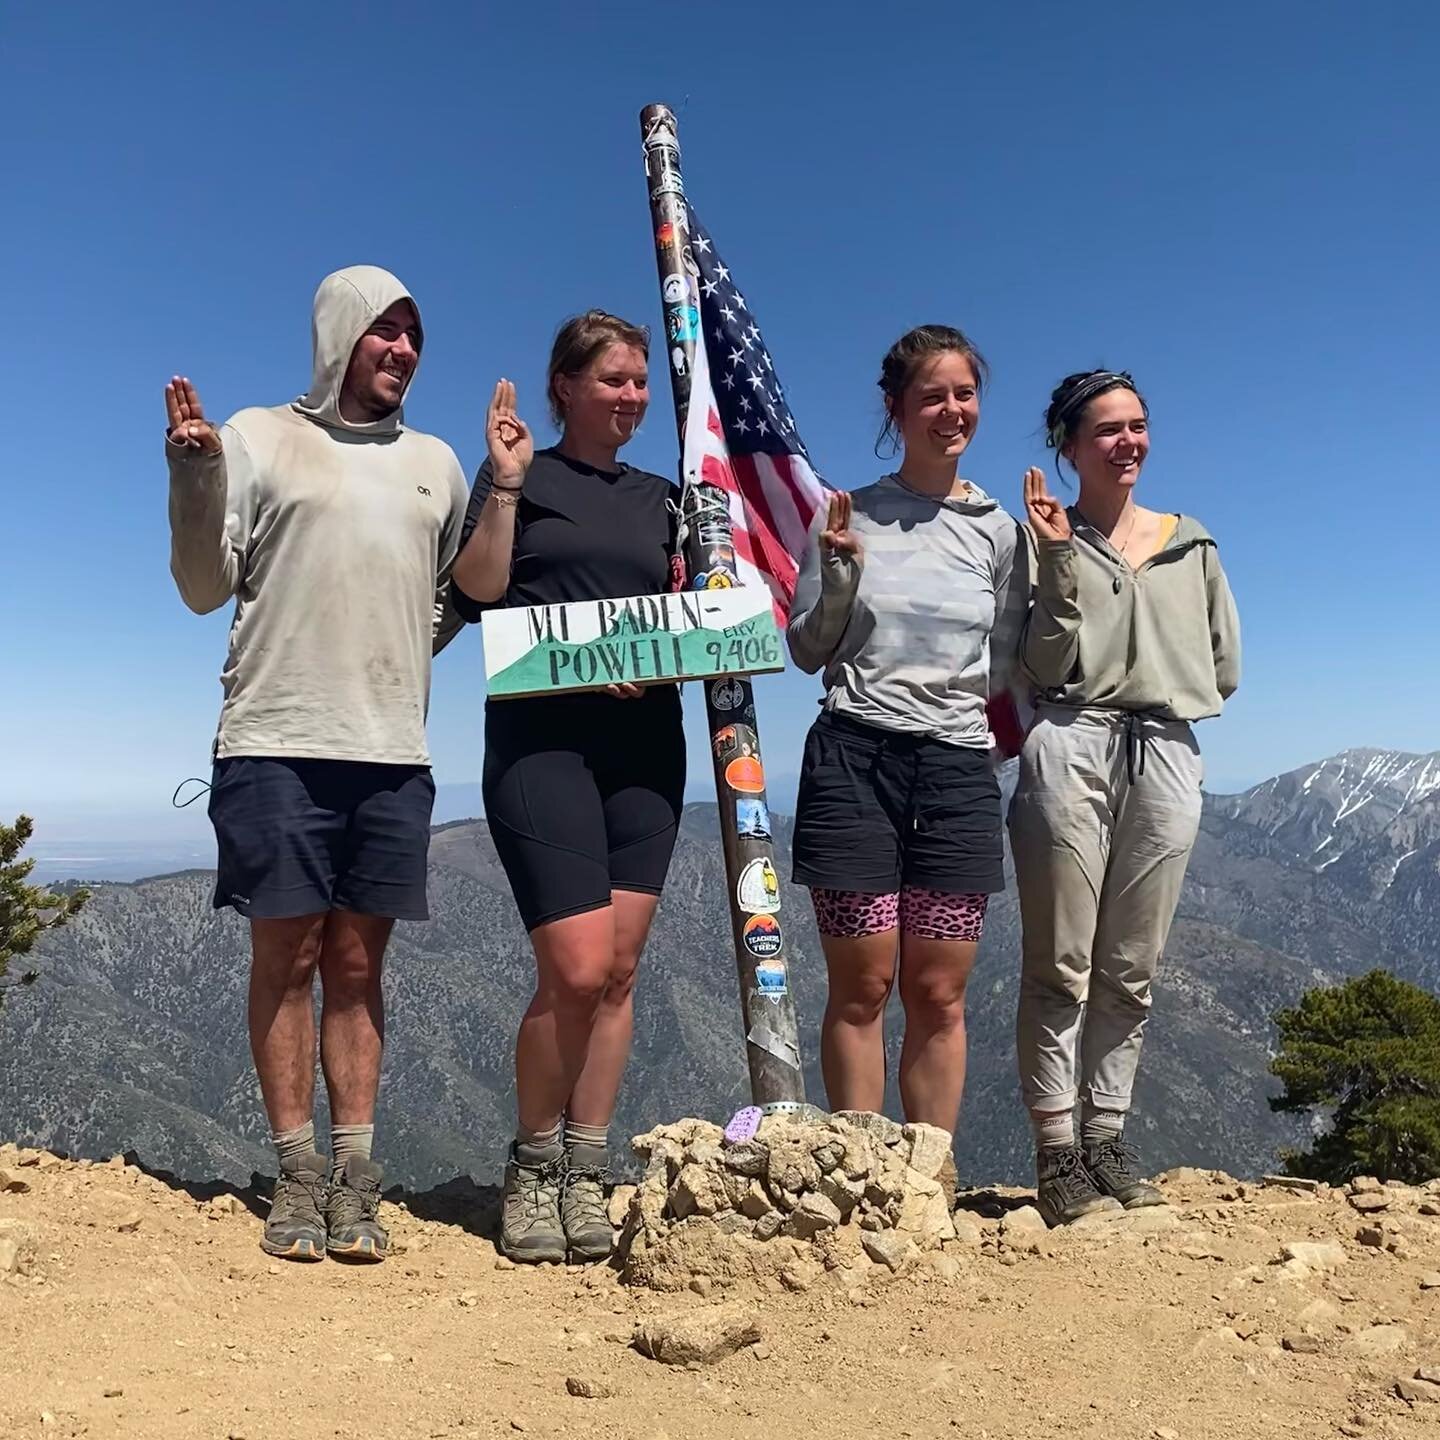 Mees, Rob, Panter en Pelikaan behaalden hun high adventure badge (Boy Scout of America)! Ze beklommen namelijk Mount Baden Powel in California. B.R.A.V.O! BRAVOOO! 

Deze beklimming maakt deel uit van de PCT die de vier dit jaar aan het stappen zijn!